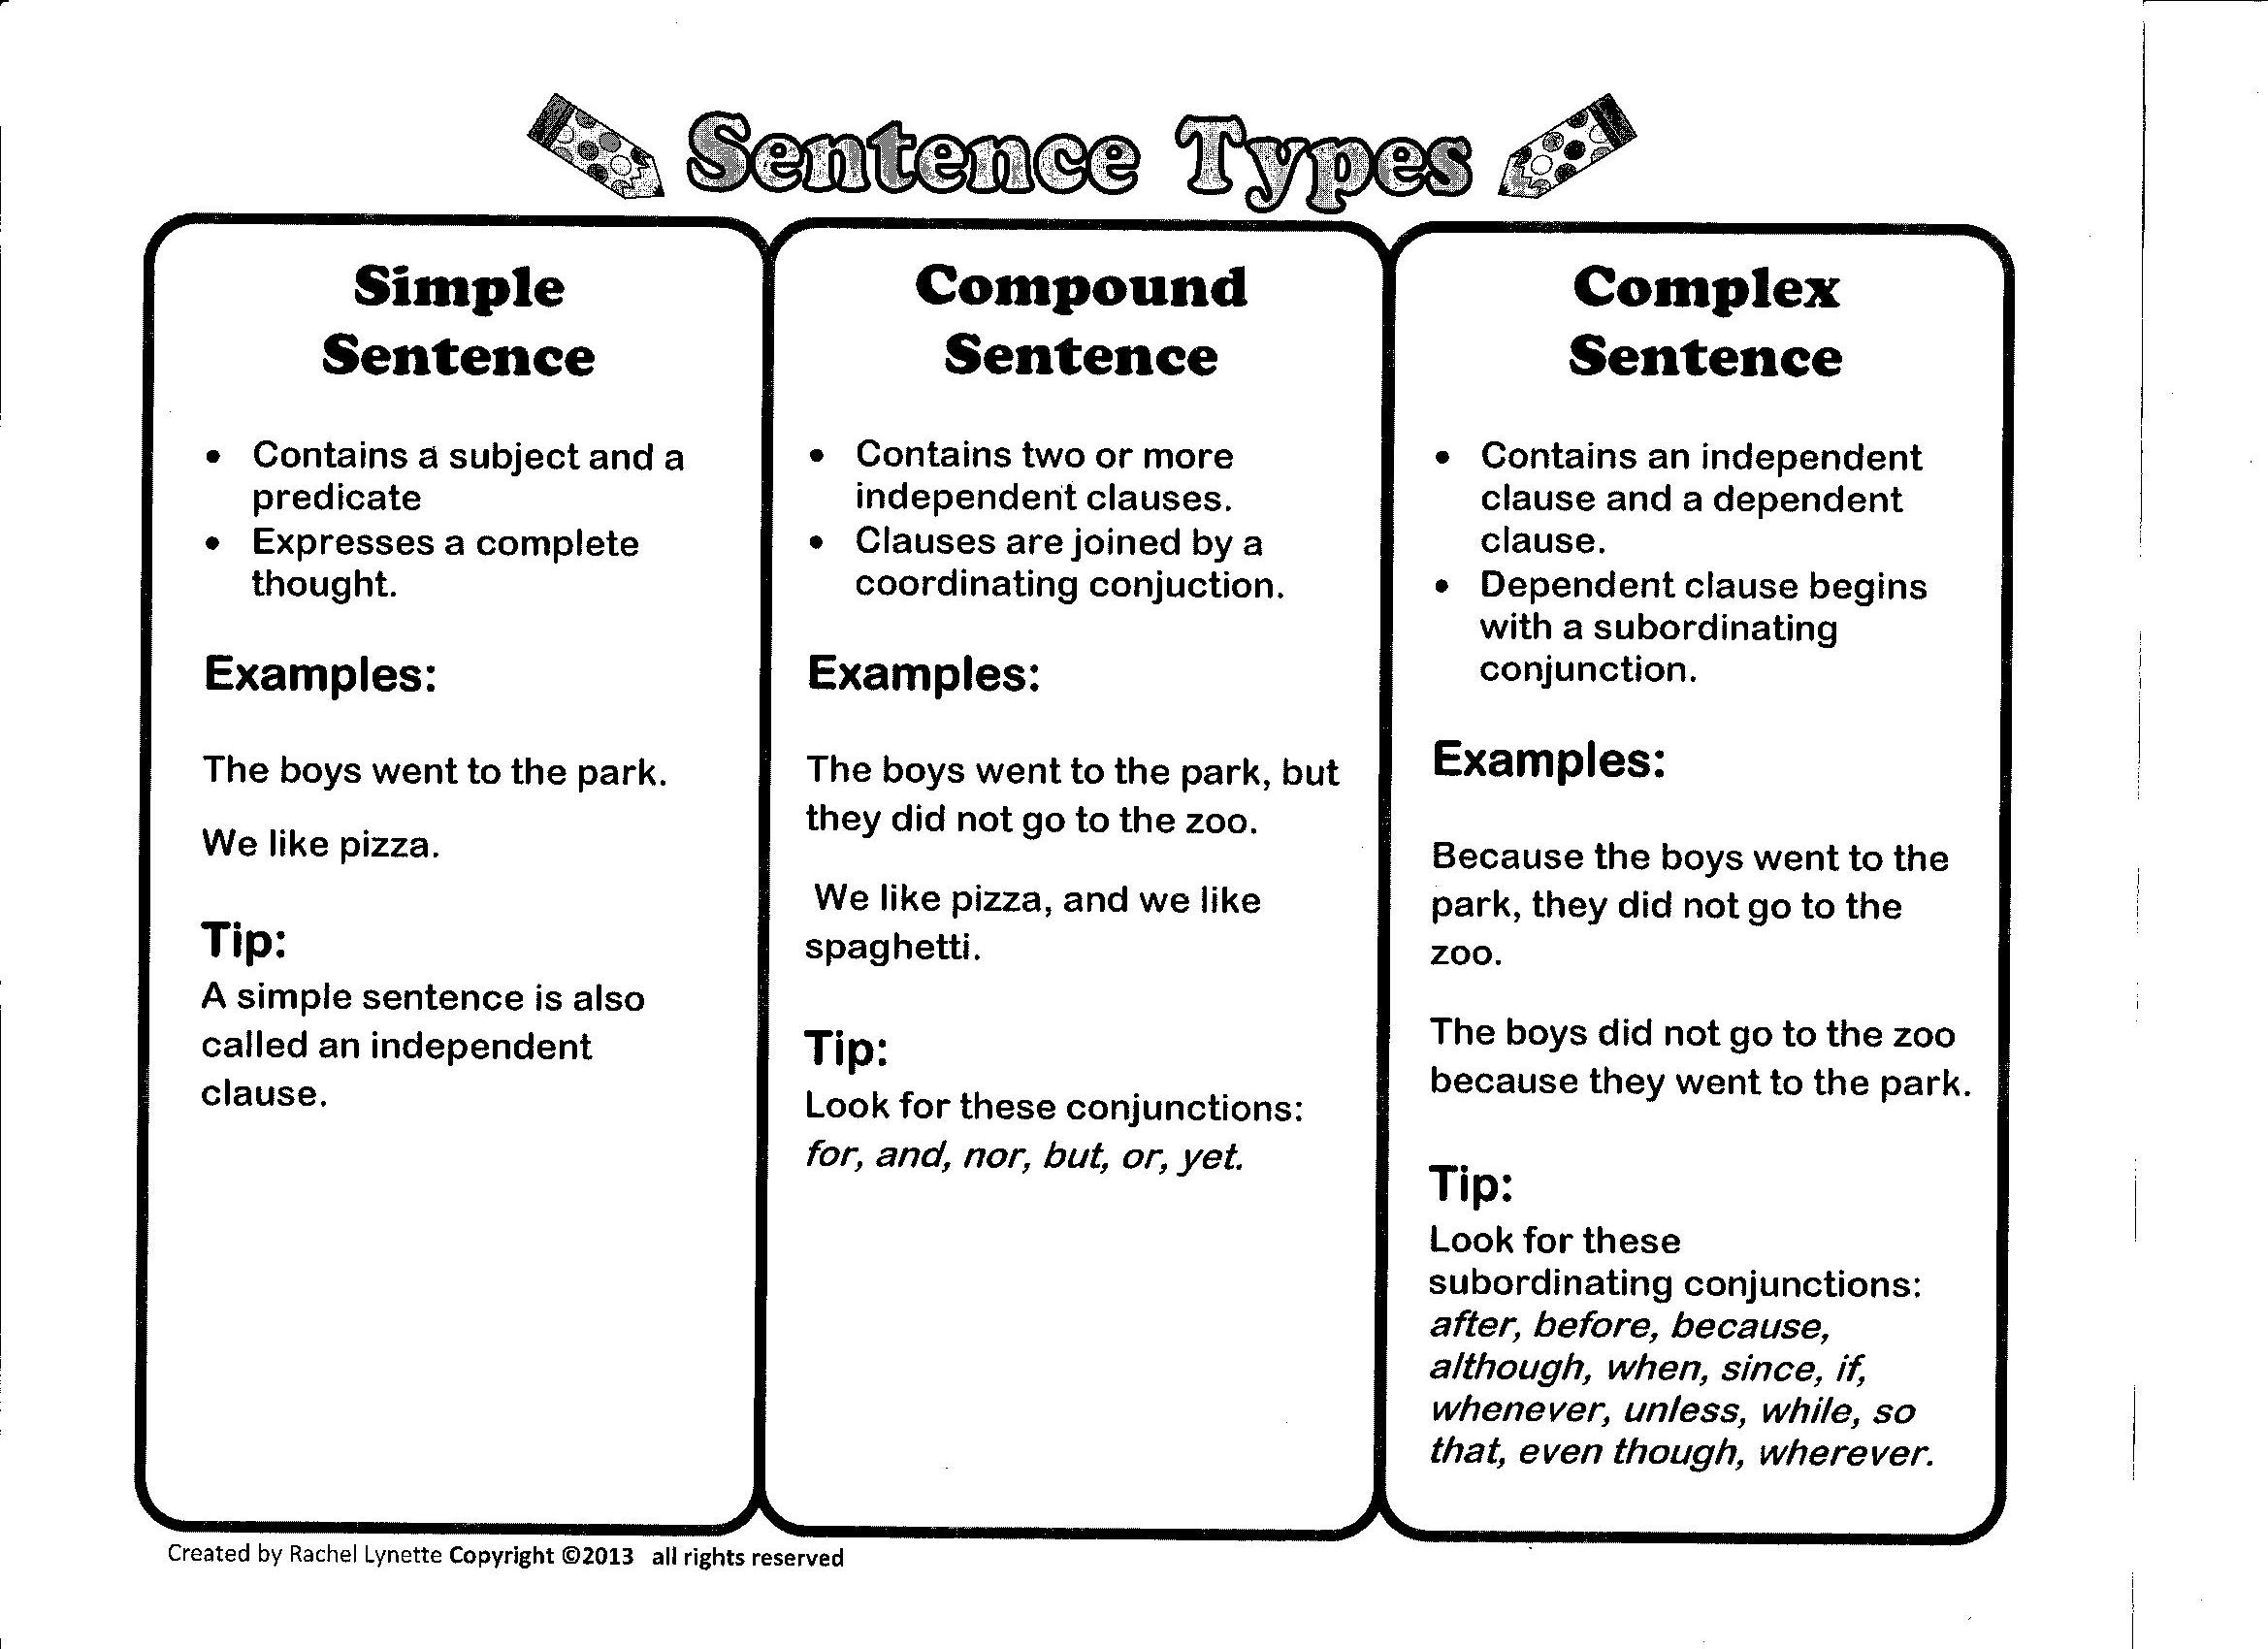 Video Explaining Simple Compound And Complex Sentences